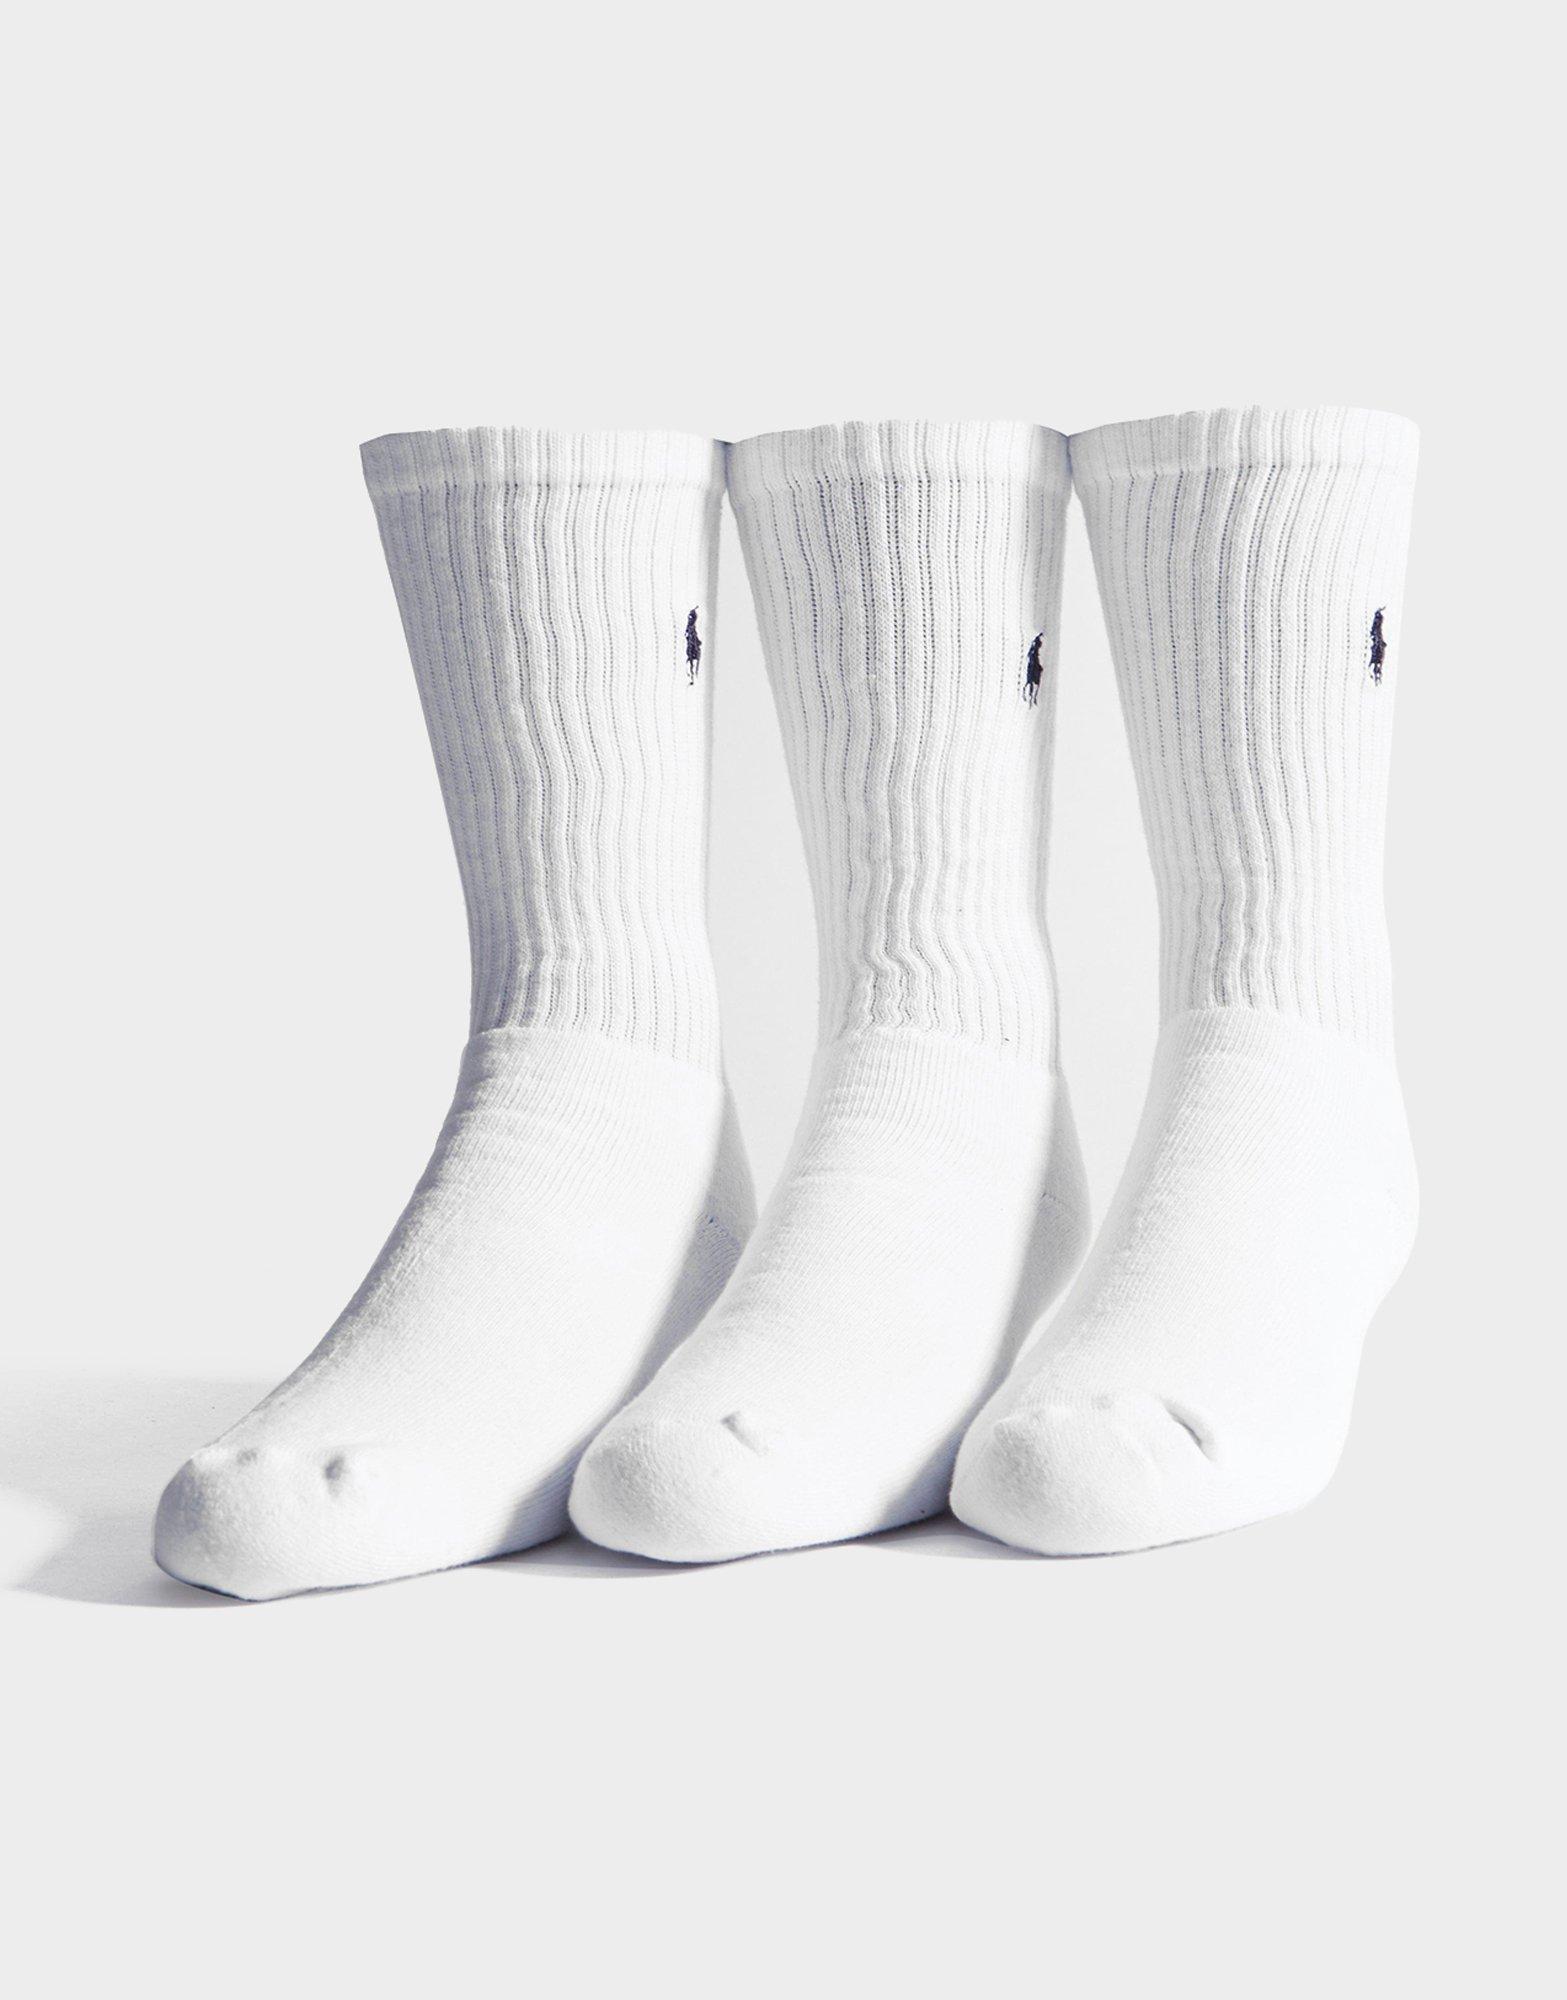 ralph socks